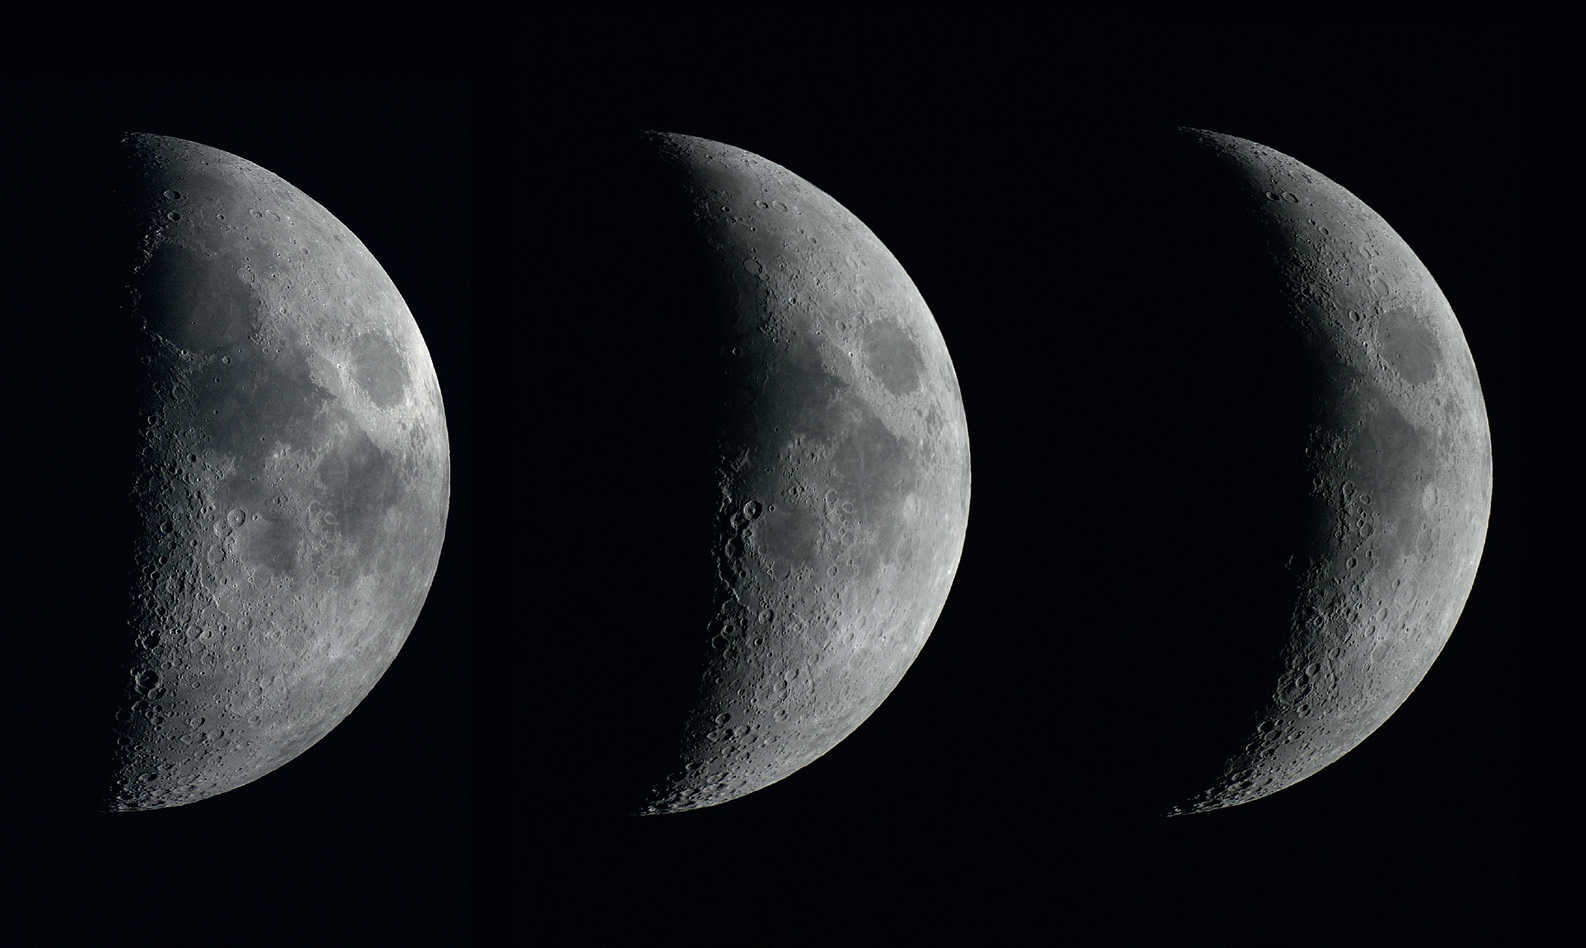 Les phases de la Lune ascendante, sur trois jours consécutifs. Les prises de vues ont été réalisées avec un reflex numérique du type Canon 450D, sur une lunette d’une ouverture de 102 mm et d’une distance focale de 1 000 mm, à des intervalles d’une journée. U. Dittler